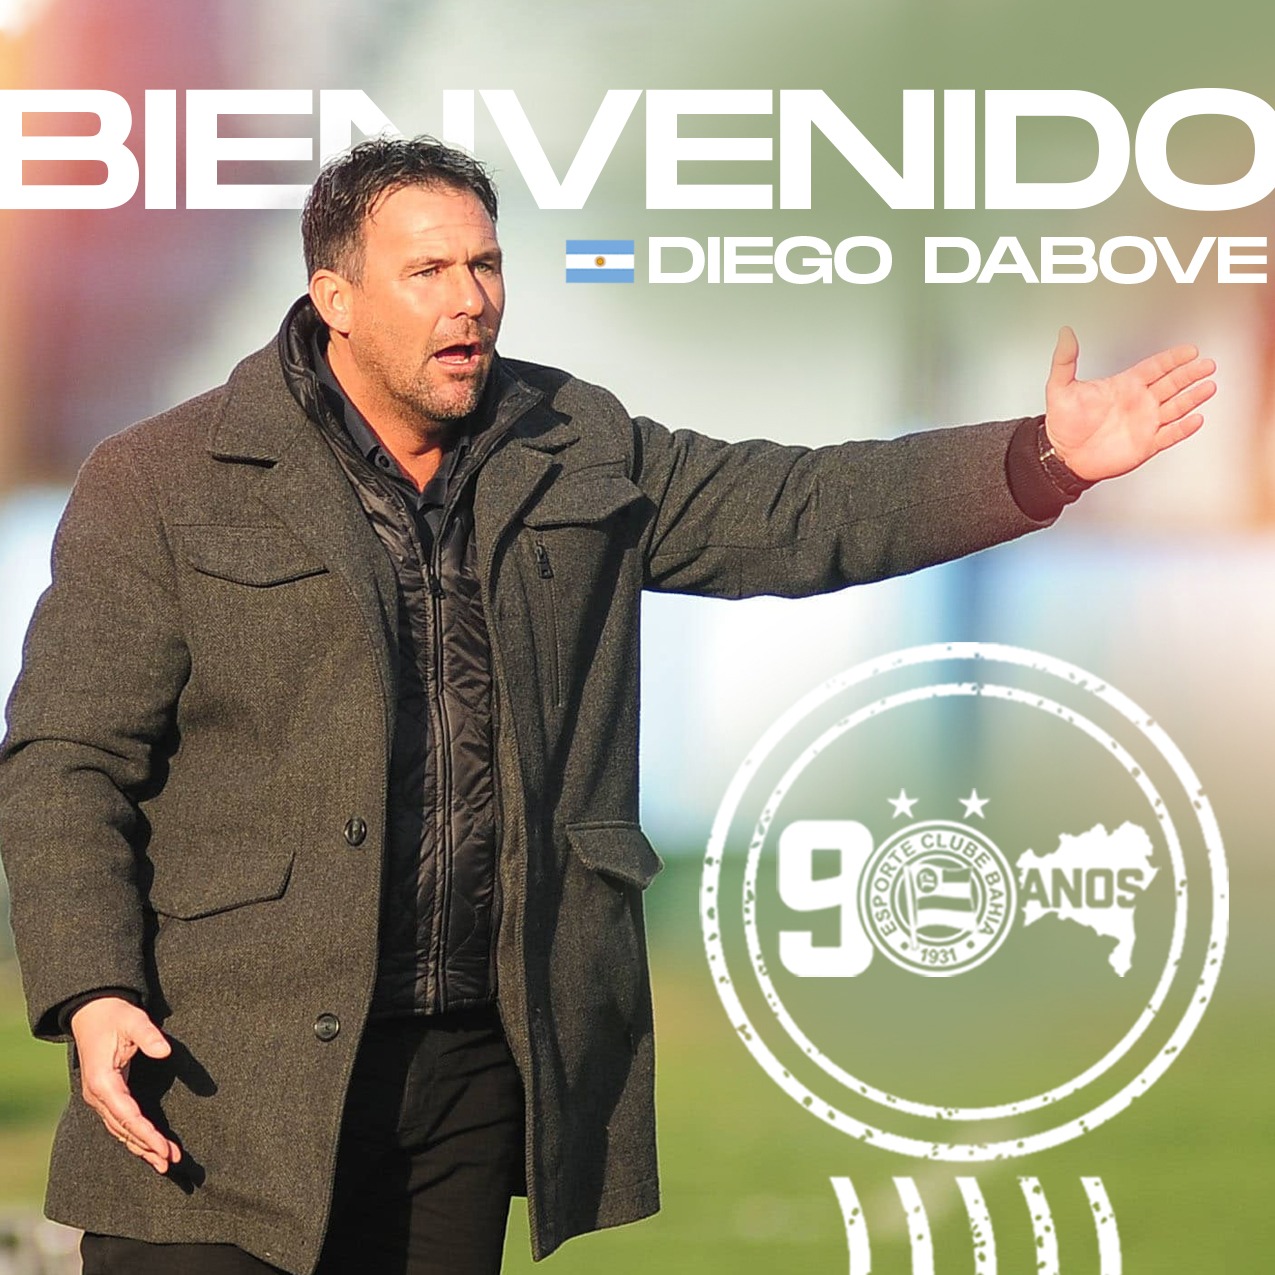 Diego Dabove